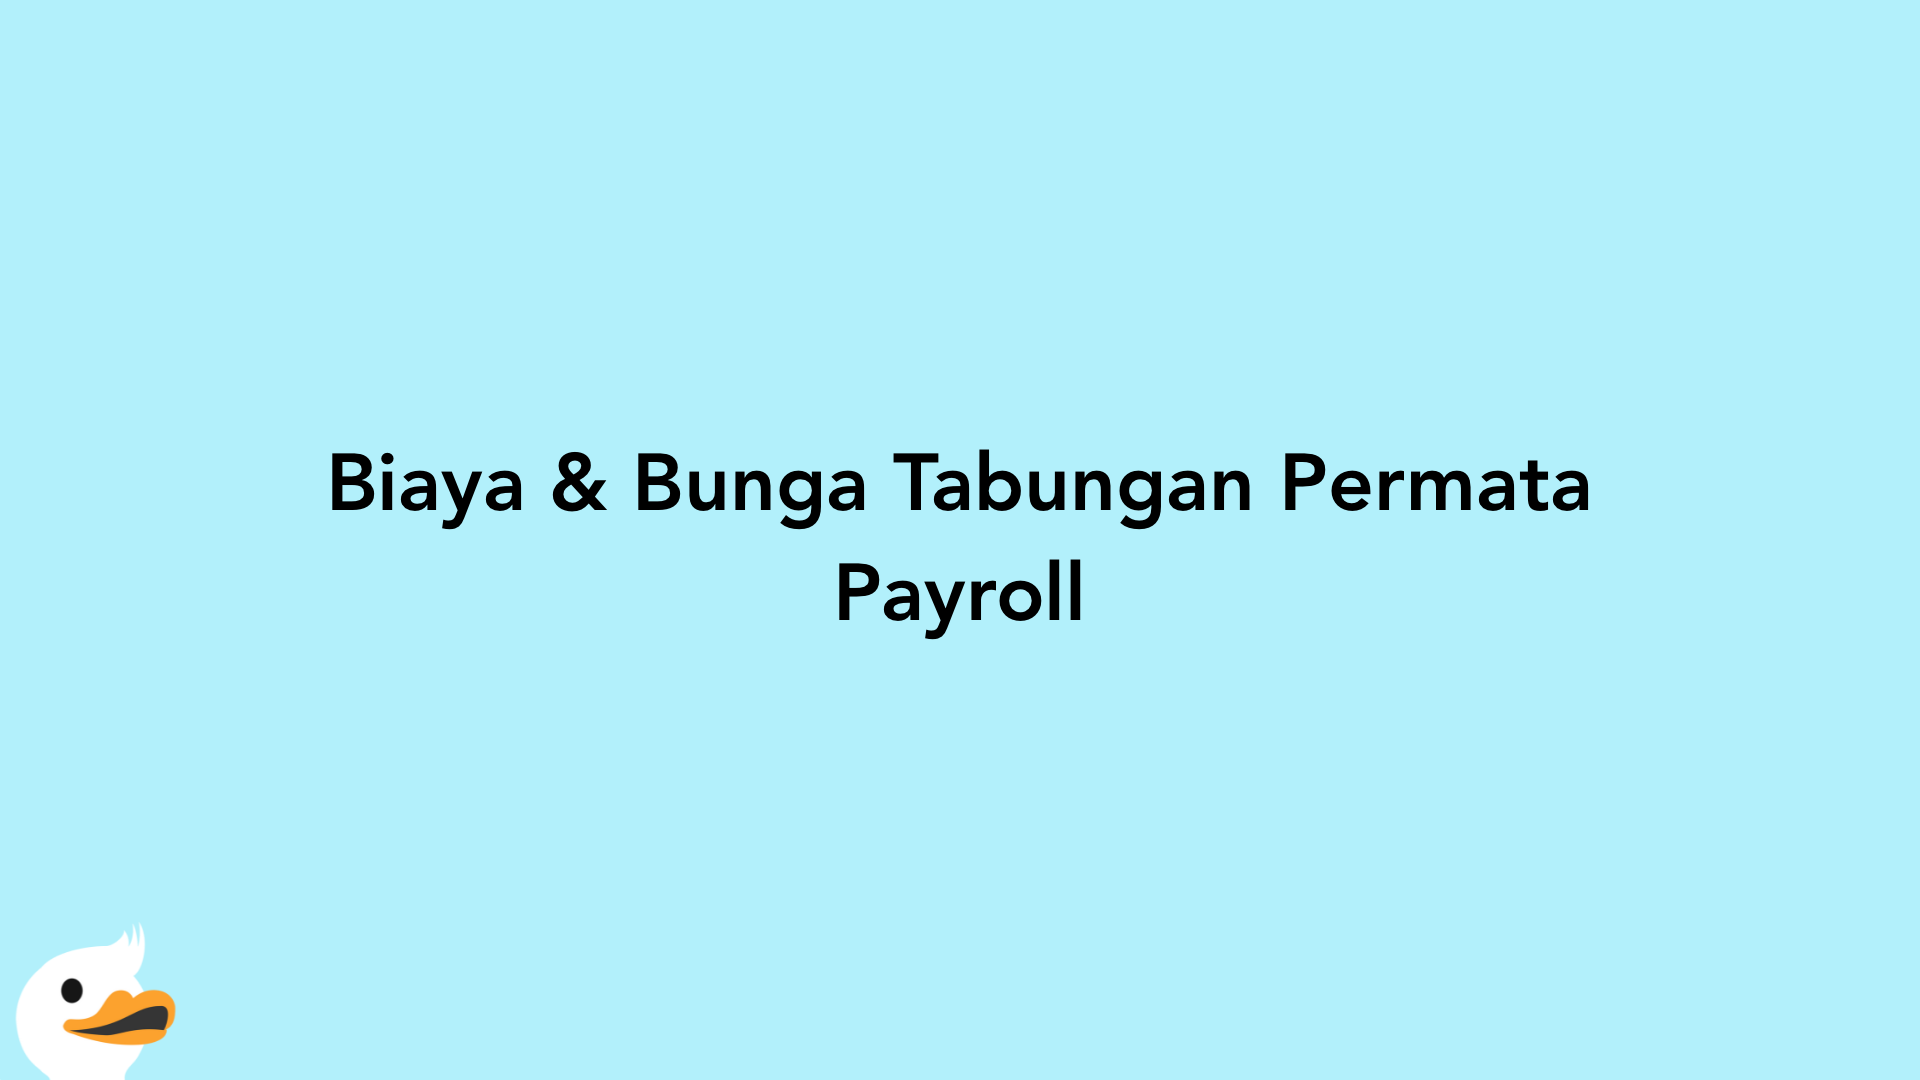 Biaya & Bunga Tabungan Permata Payroll